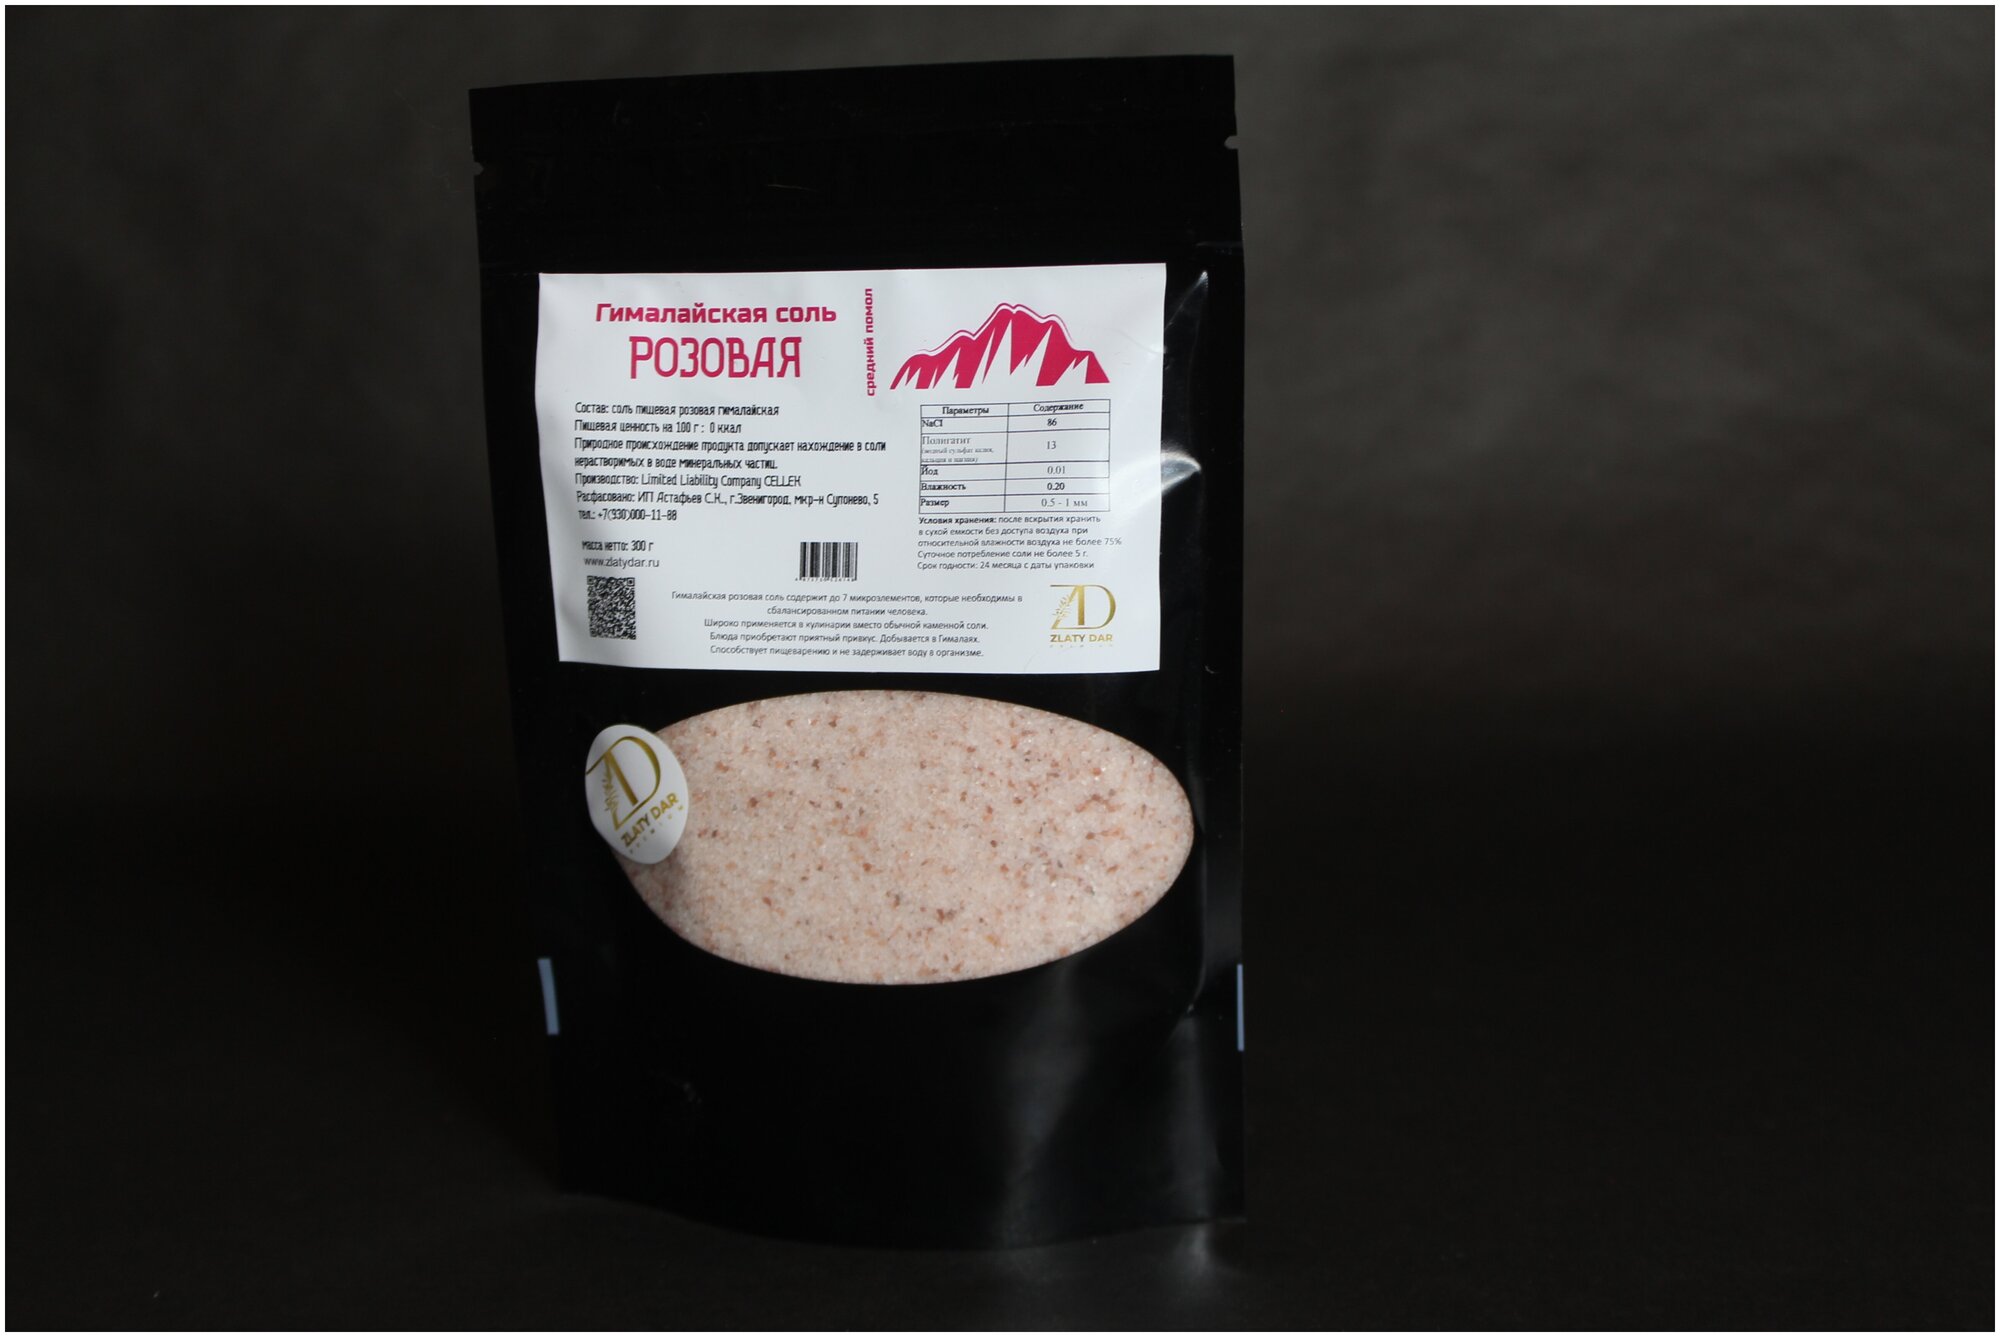 Розовая соль Гималайская, средний помол (0,5-2 мм), 300 гр.